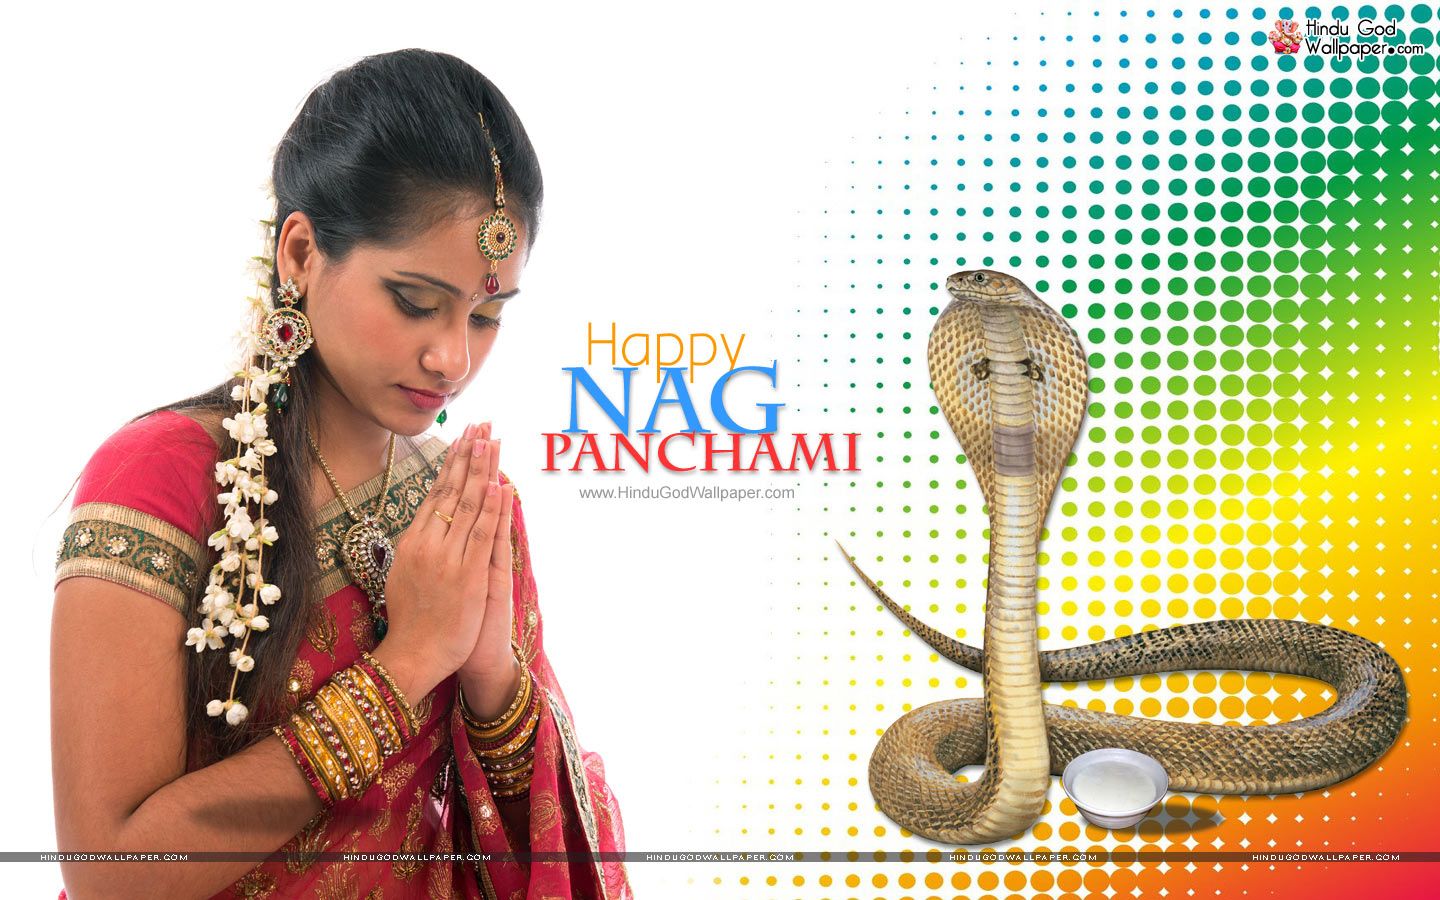 Nag Panchami Image Hd - 1440x900 Wallpaper 